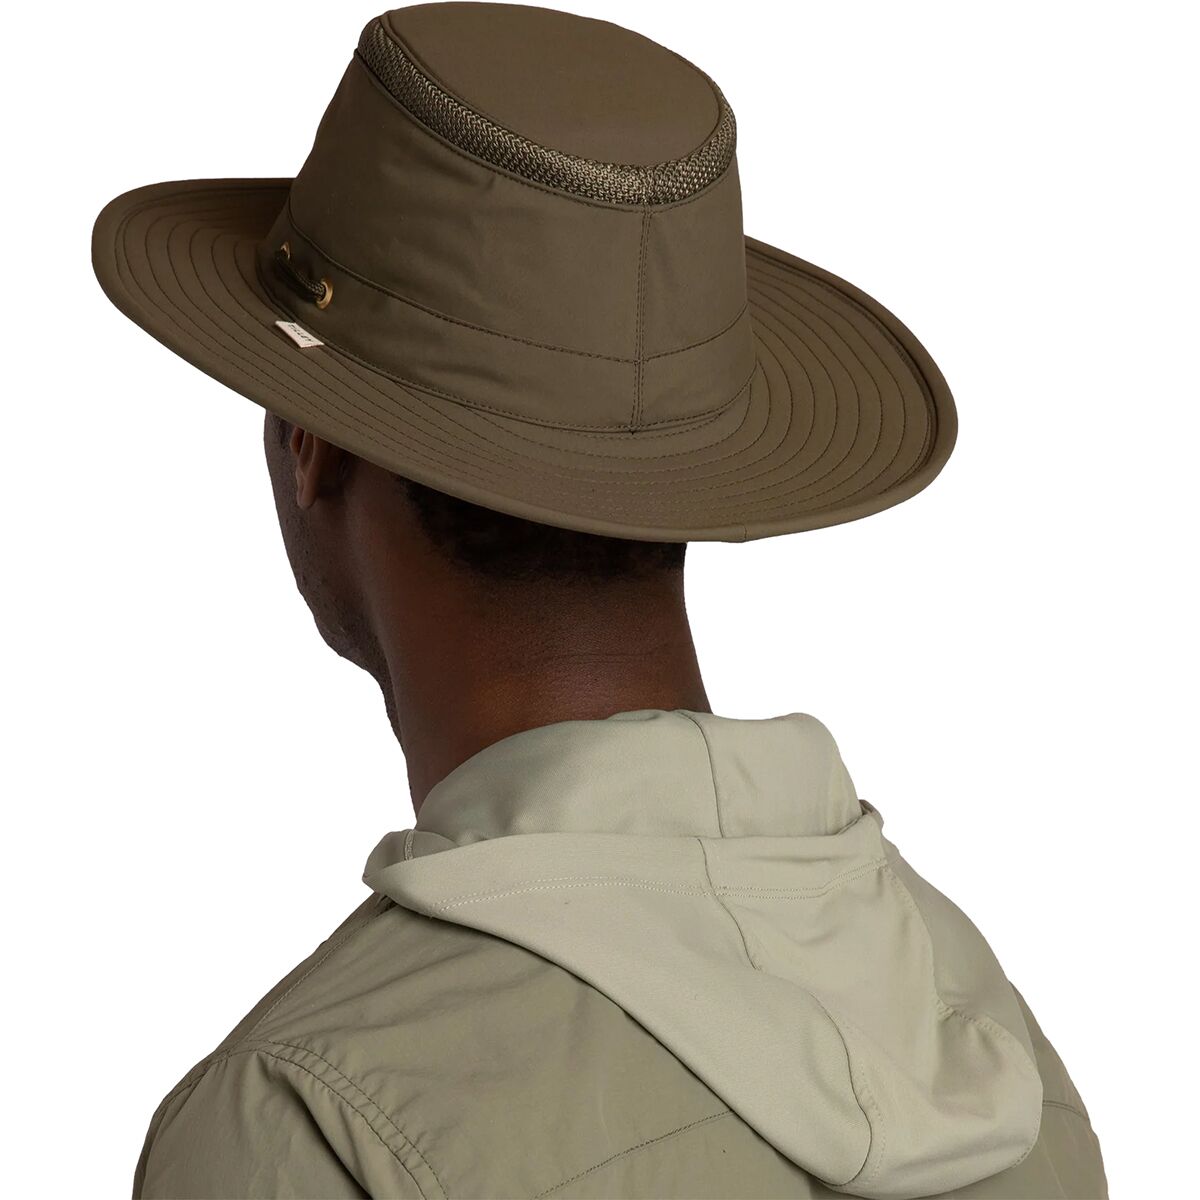 Tilley Men's Airflo Hat, Olive, Size 7